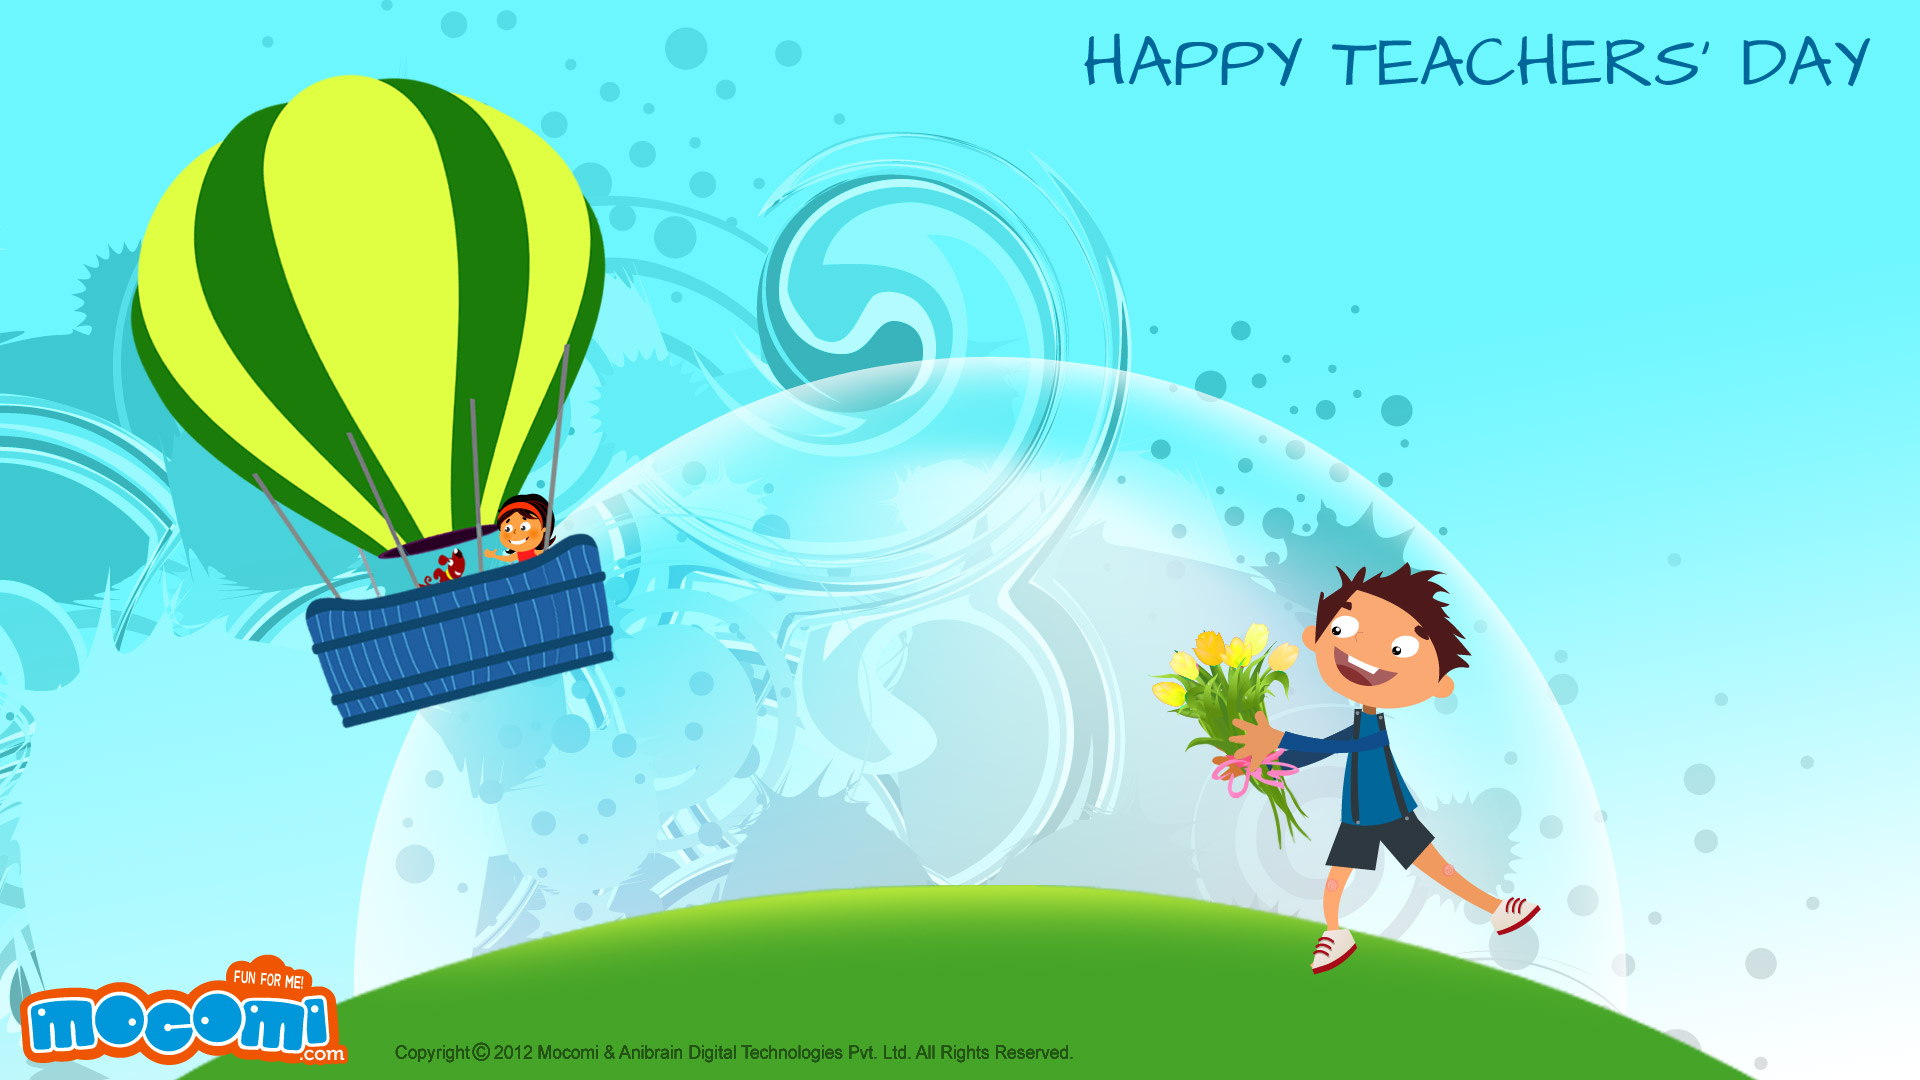 Happy Teachers’ Day! 02